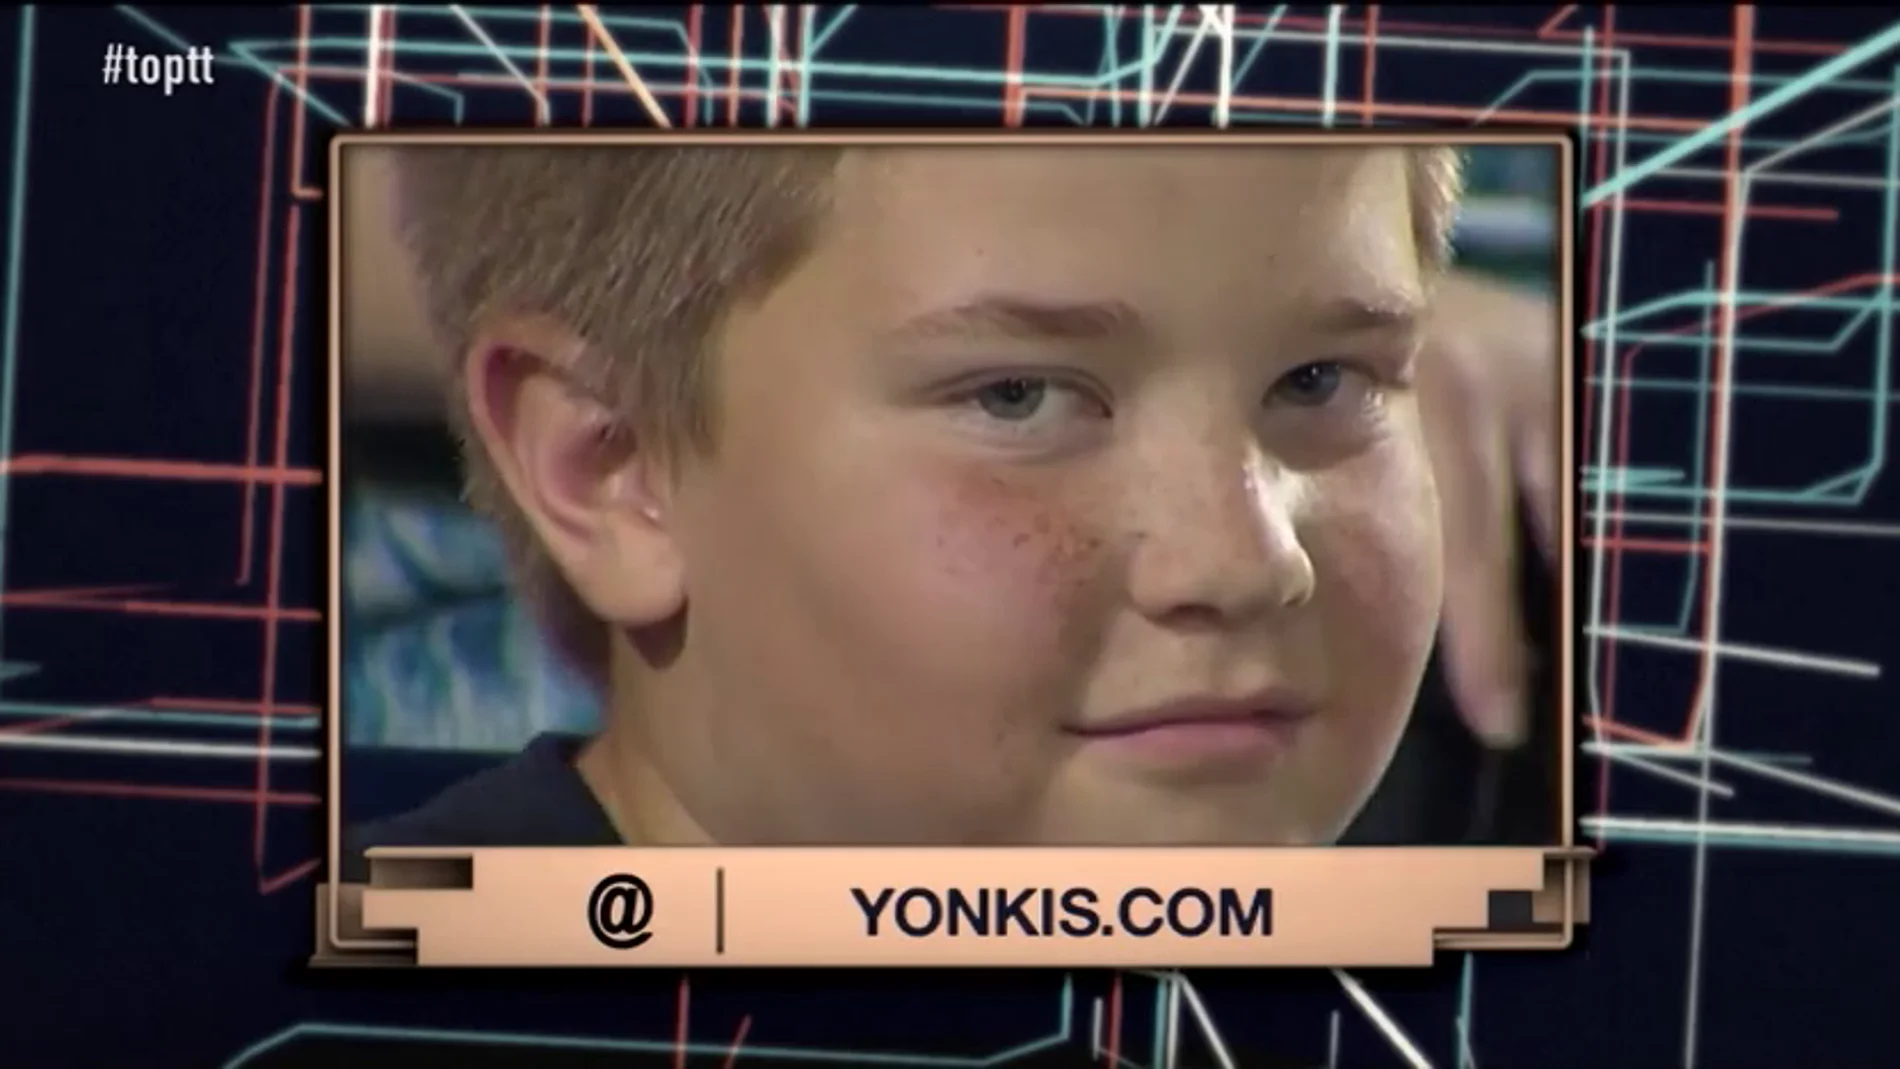 Frame 30.202595 de: Sus miradas a cámara y sus gestos durante un partido de béisbol, convierten a este niño en viral